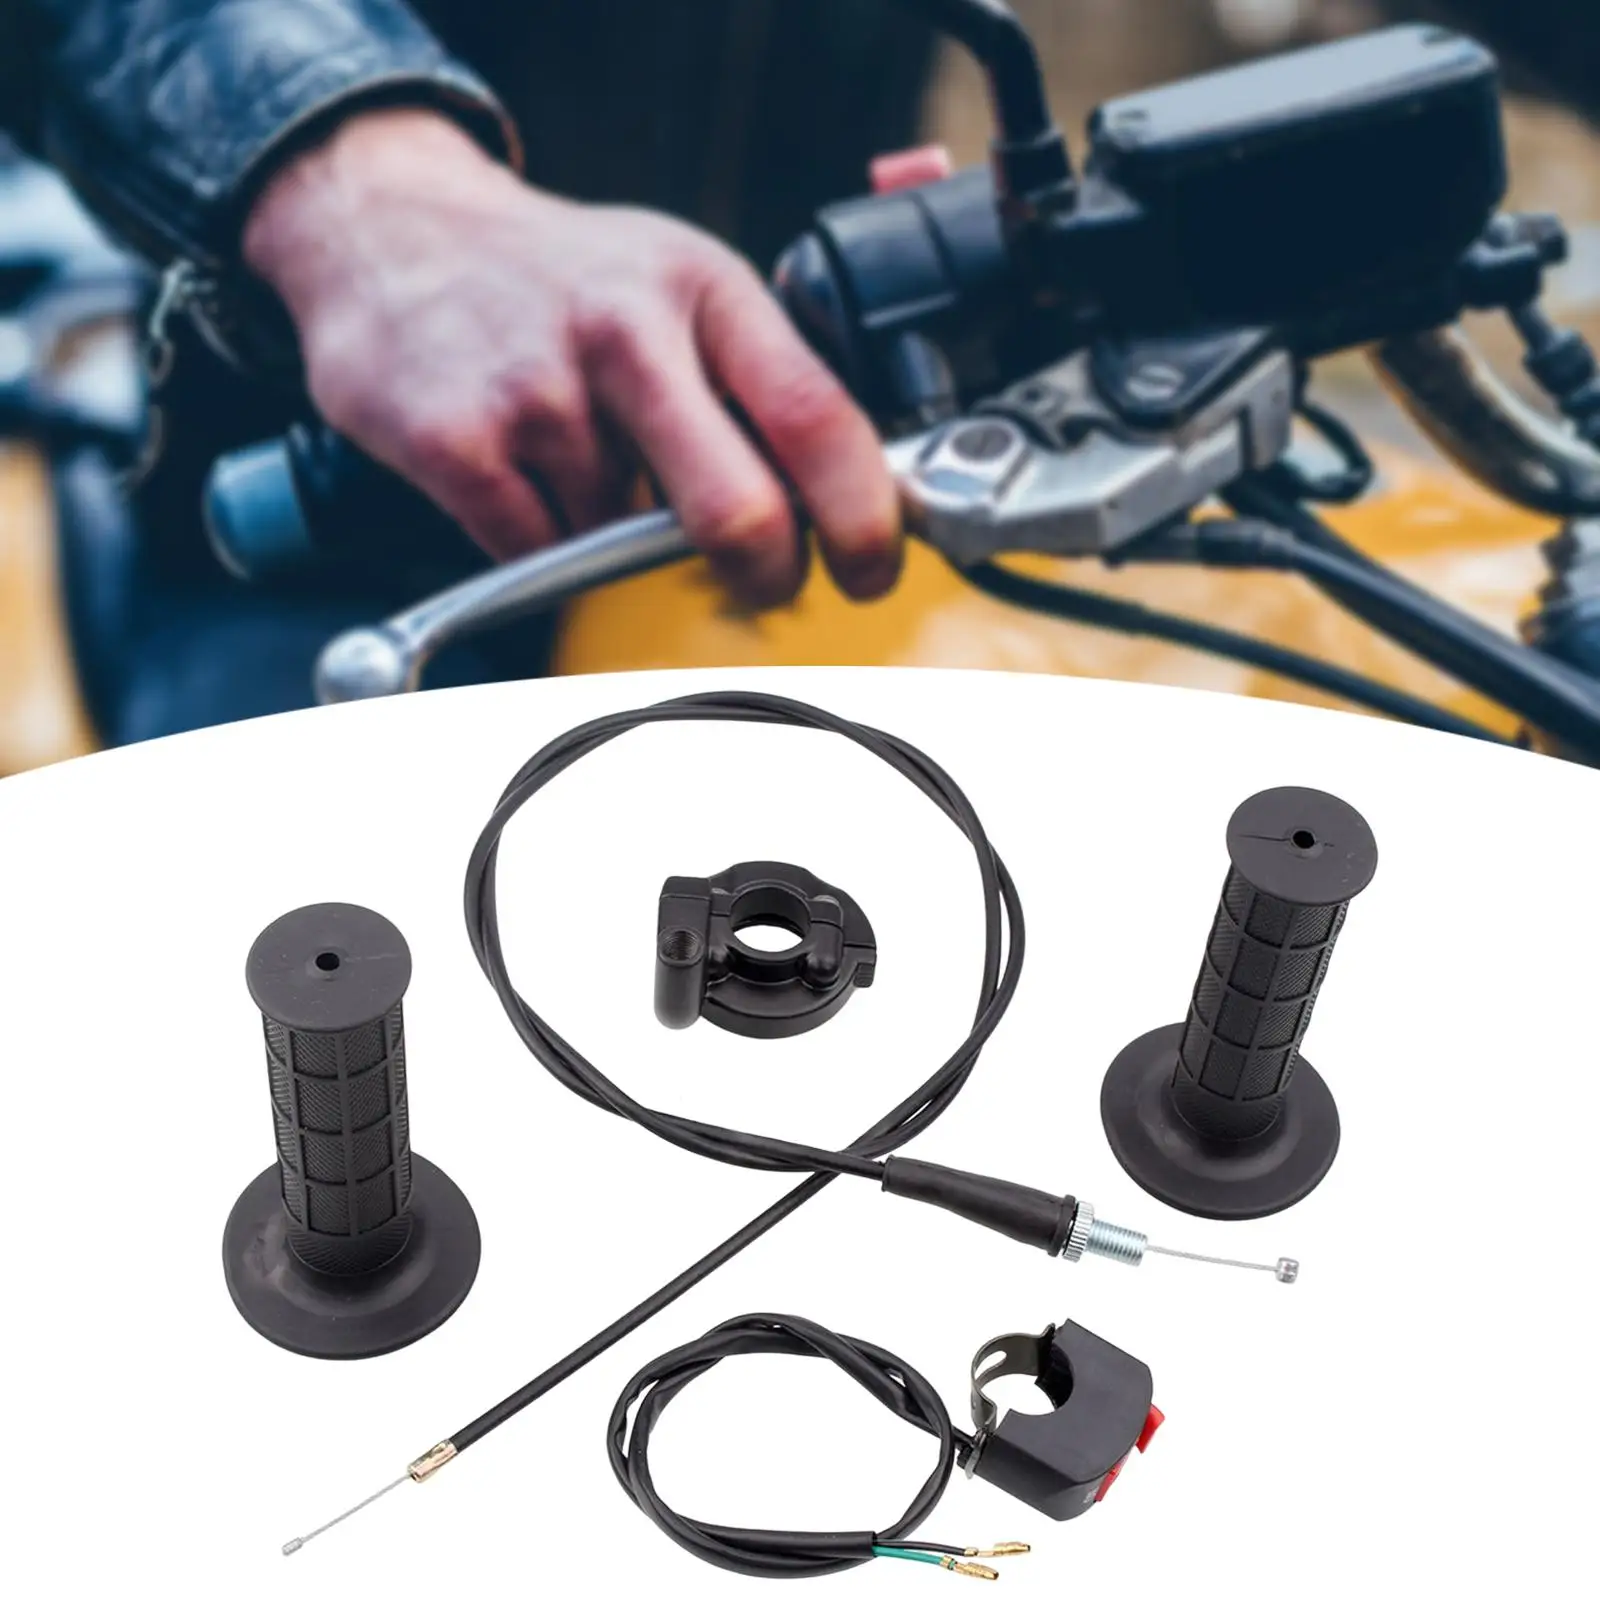 Throttle Accelerator Handle Grips Cable Set for 50cc 150cc 250cc Mini Bike ATV Quad Pit Bike Replaces Accessories Durable